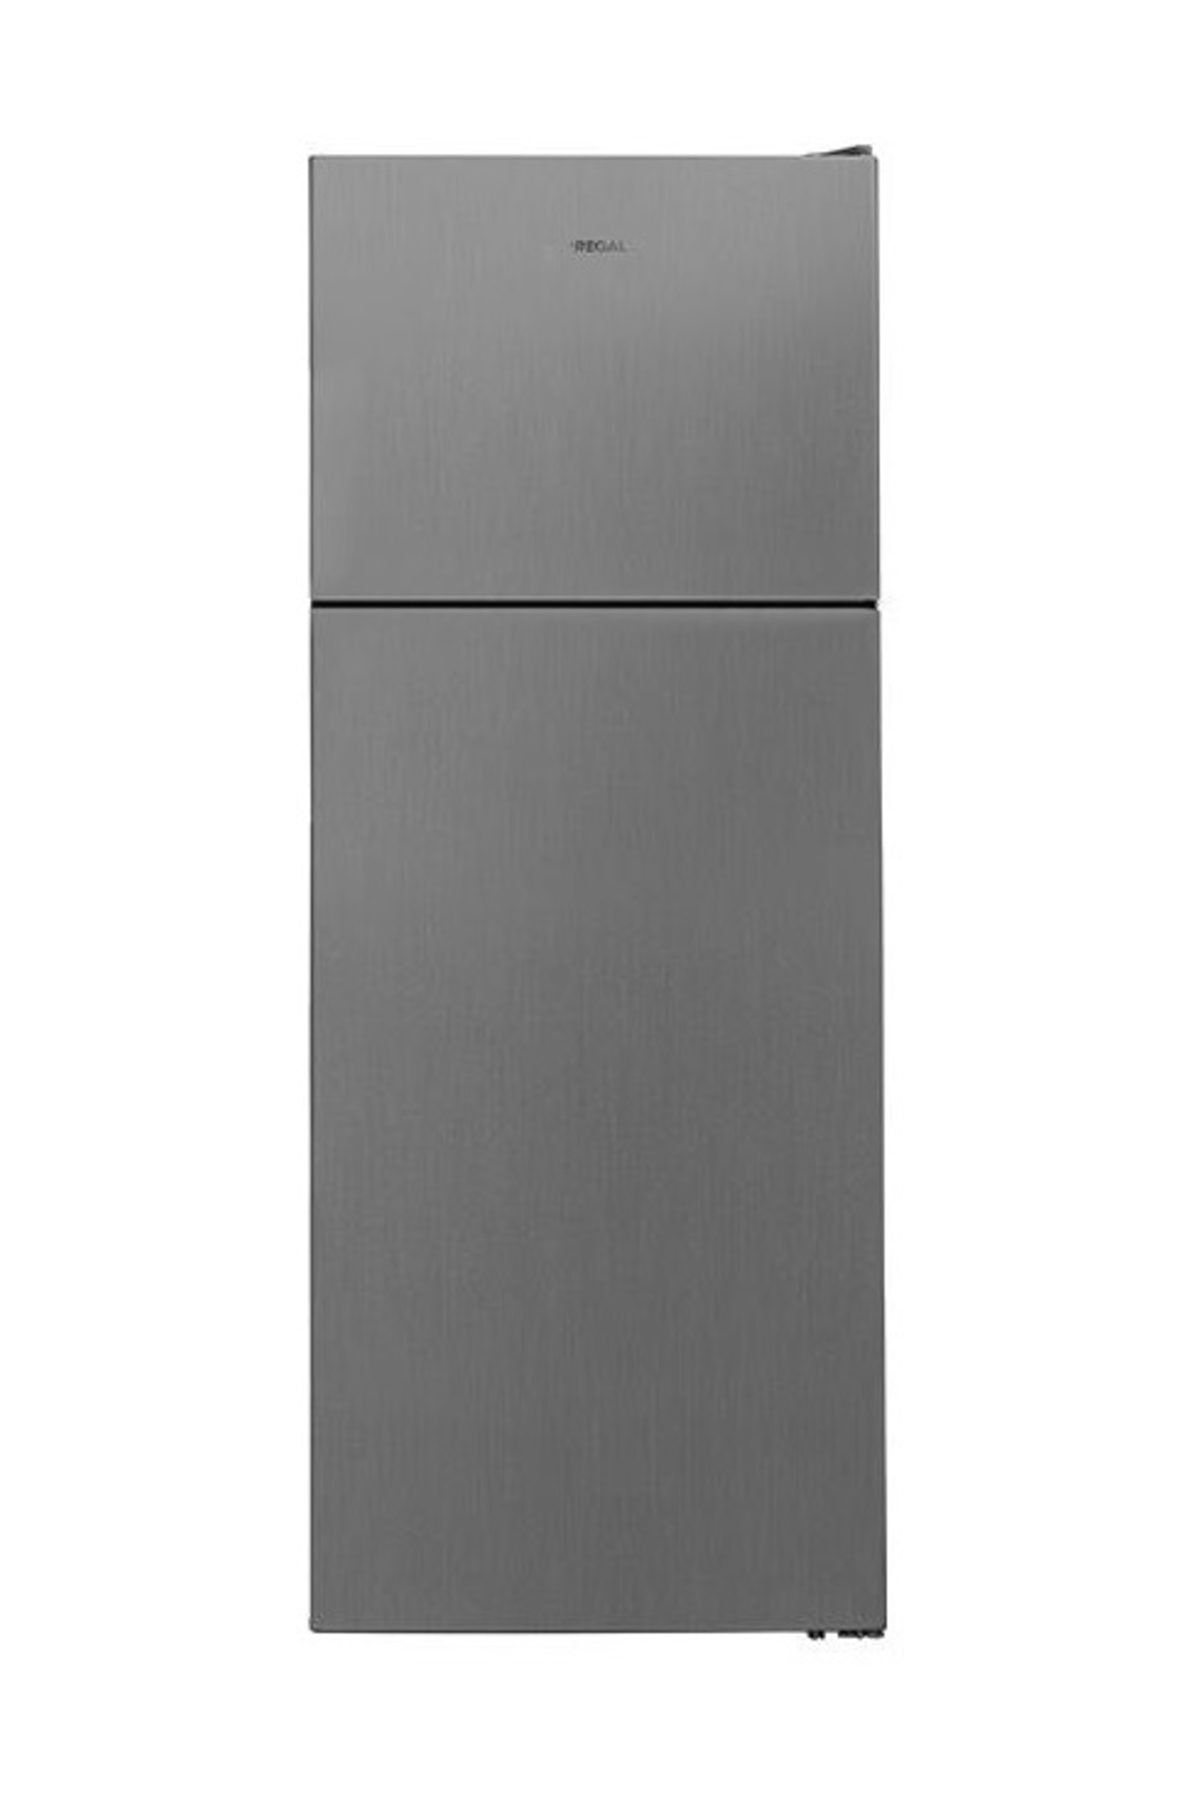 Regal ST 4710 IG A+ Buzdolabı